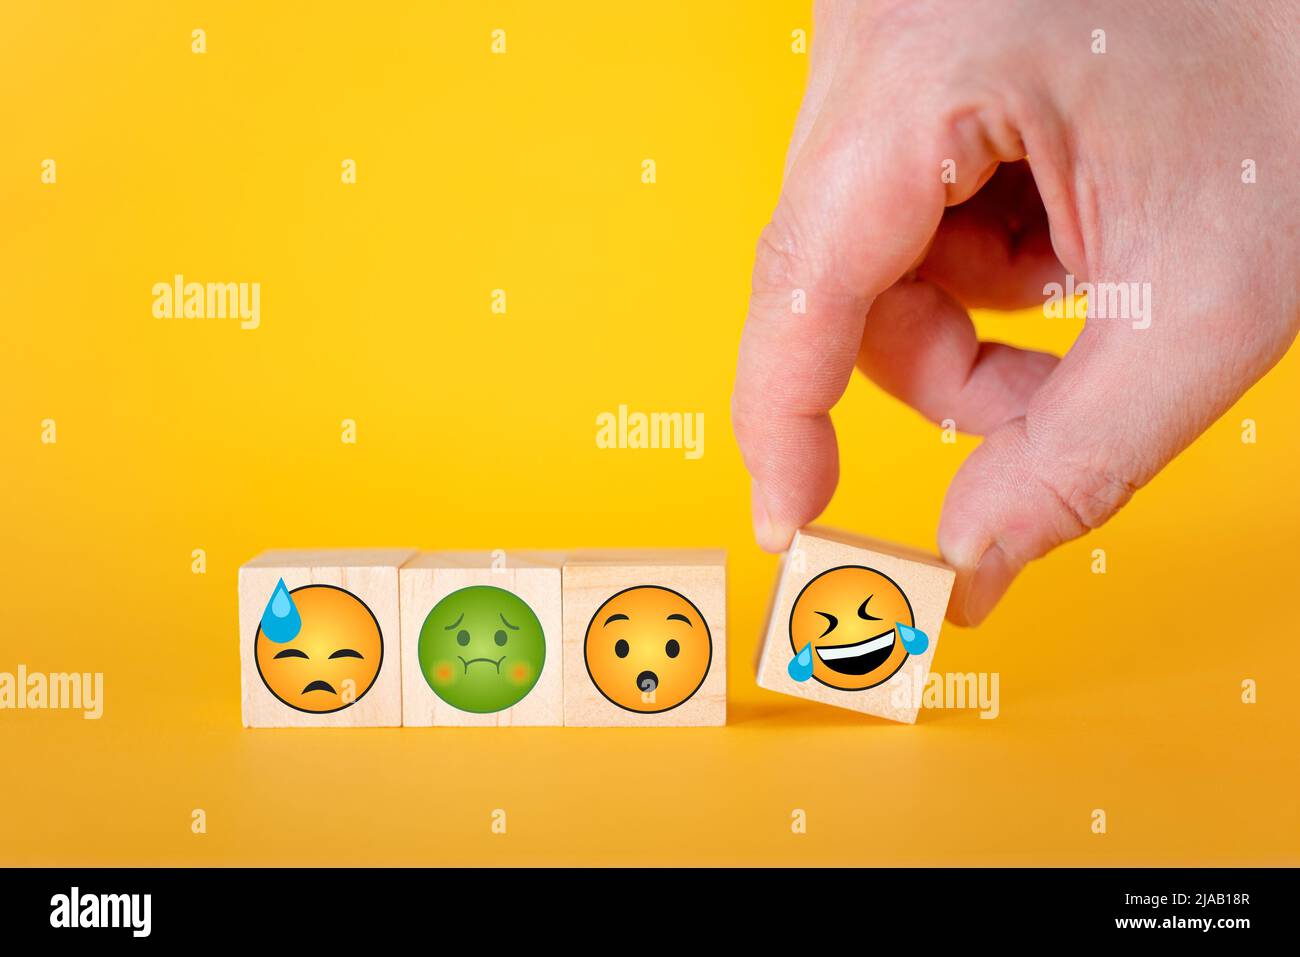 Émoticônes emoji sur fond jaune, la main prend un cube avec un émoticône smiley. Le concept de la journée mondiale des émoticônes. Banque D'Images